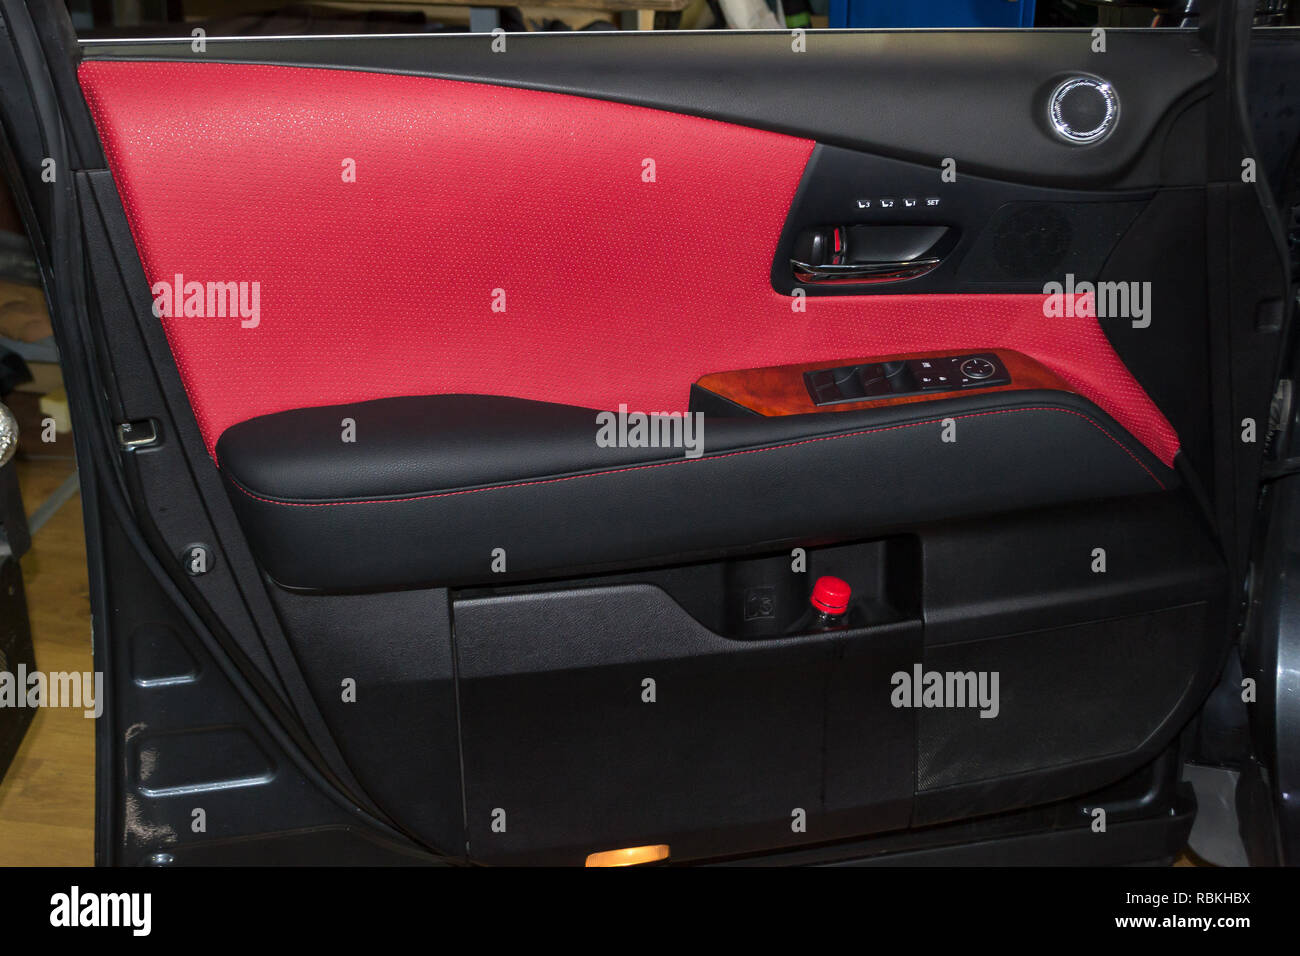 Innenraum der SUV-Auto mit einem umgebauten Leder in rot-schwarze